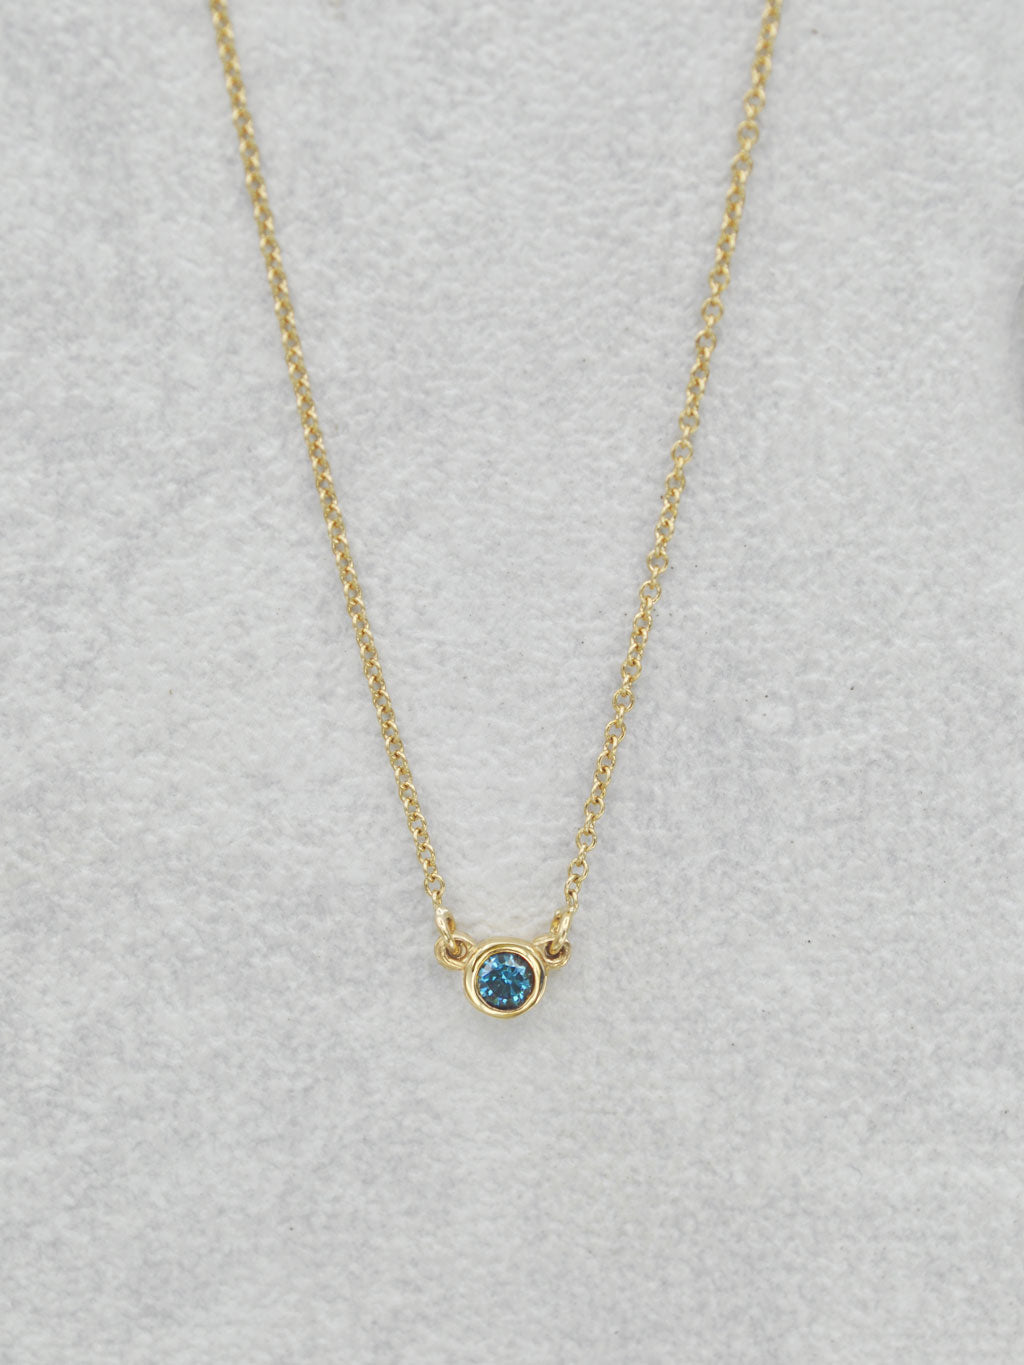 Blue Diamond Bezel Necklace